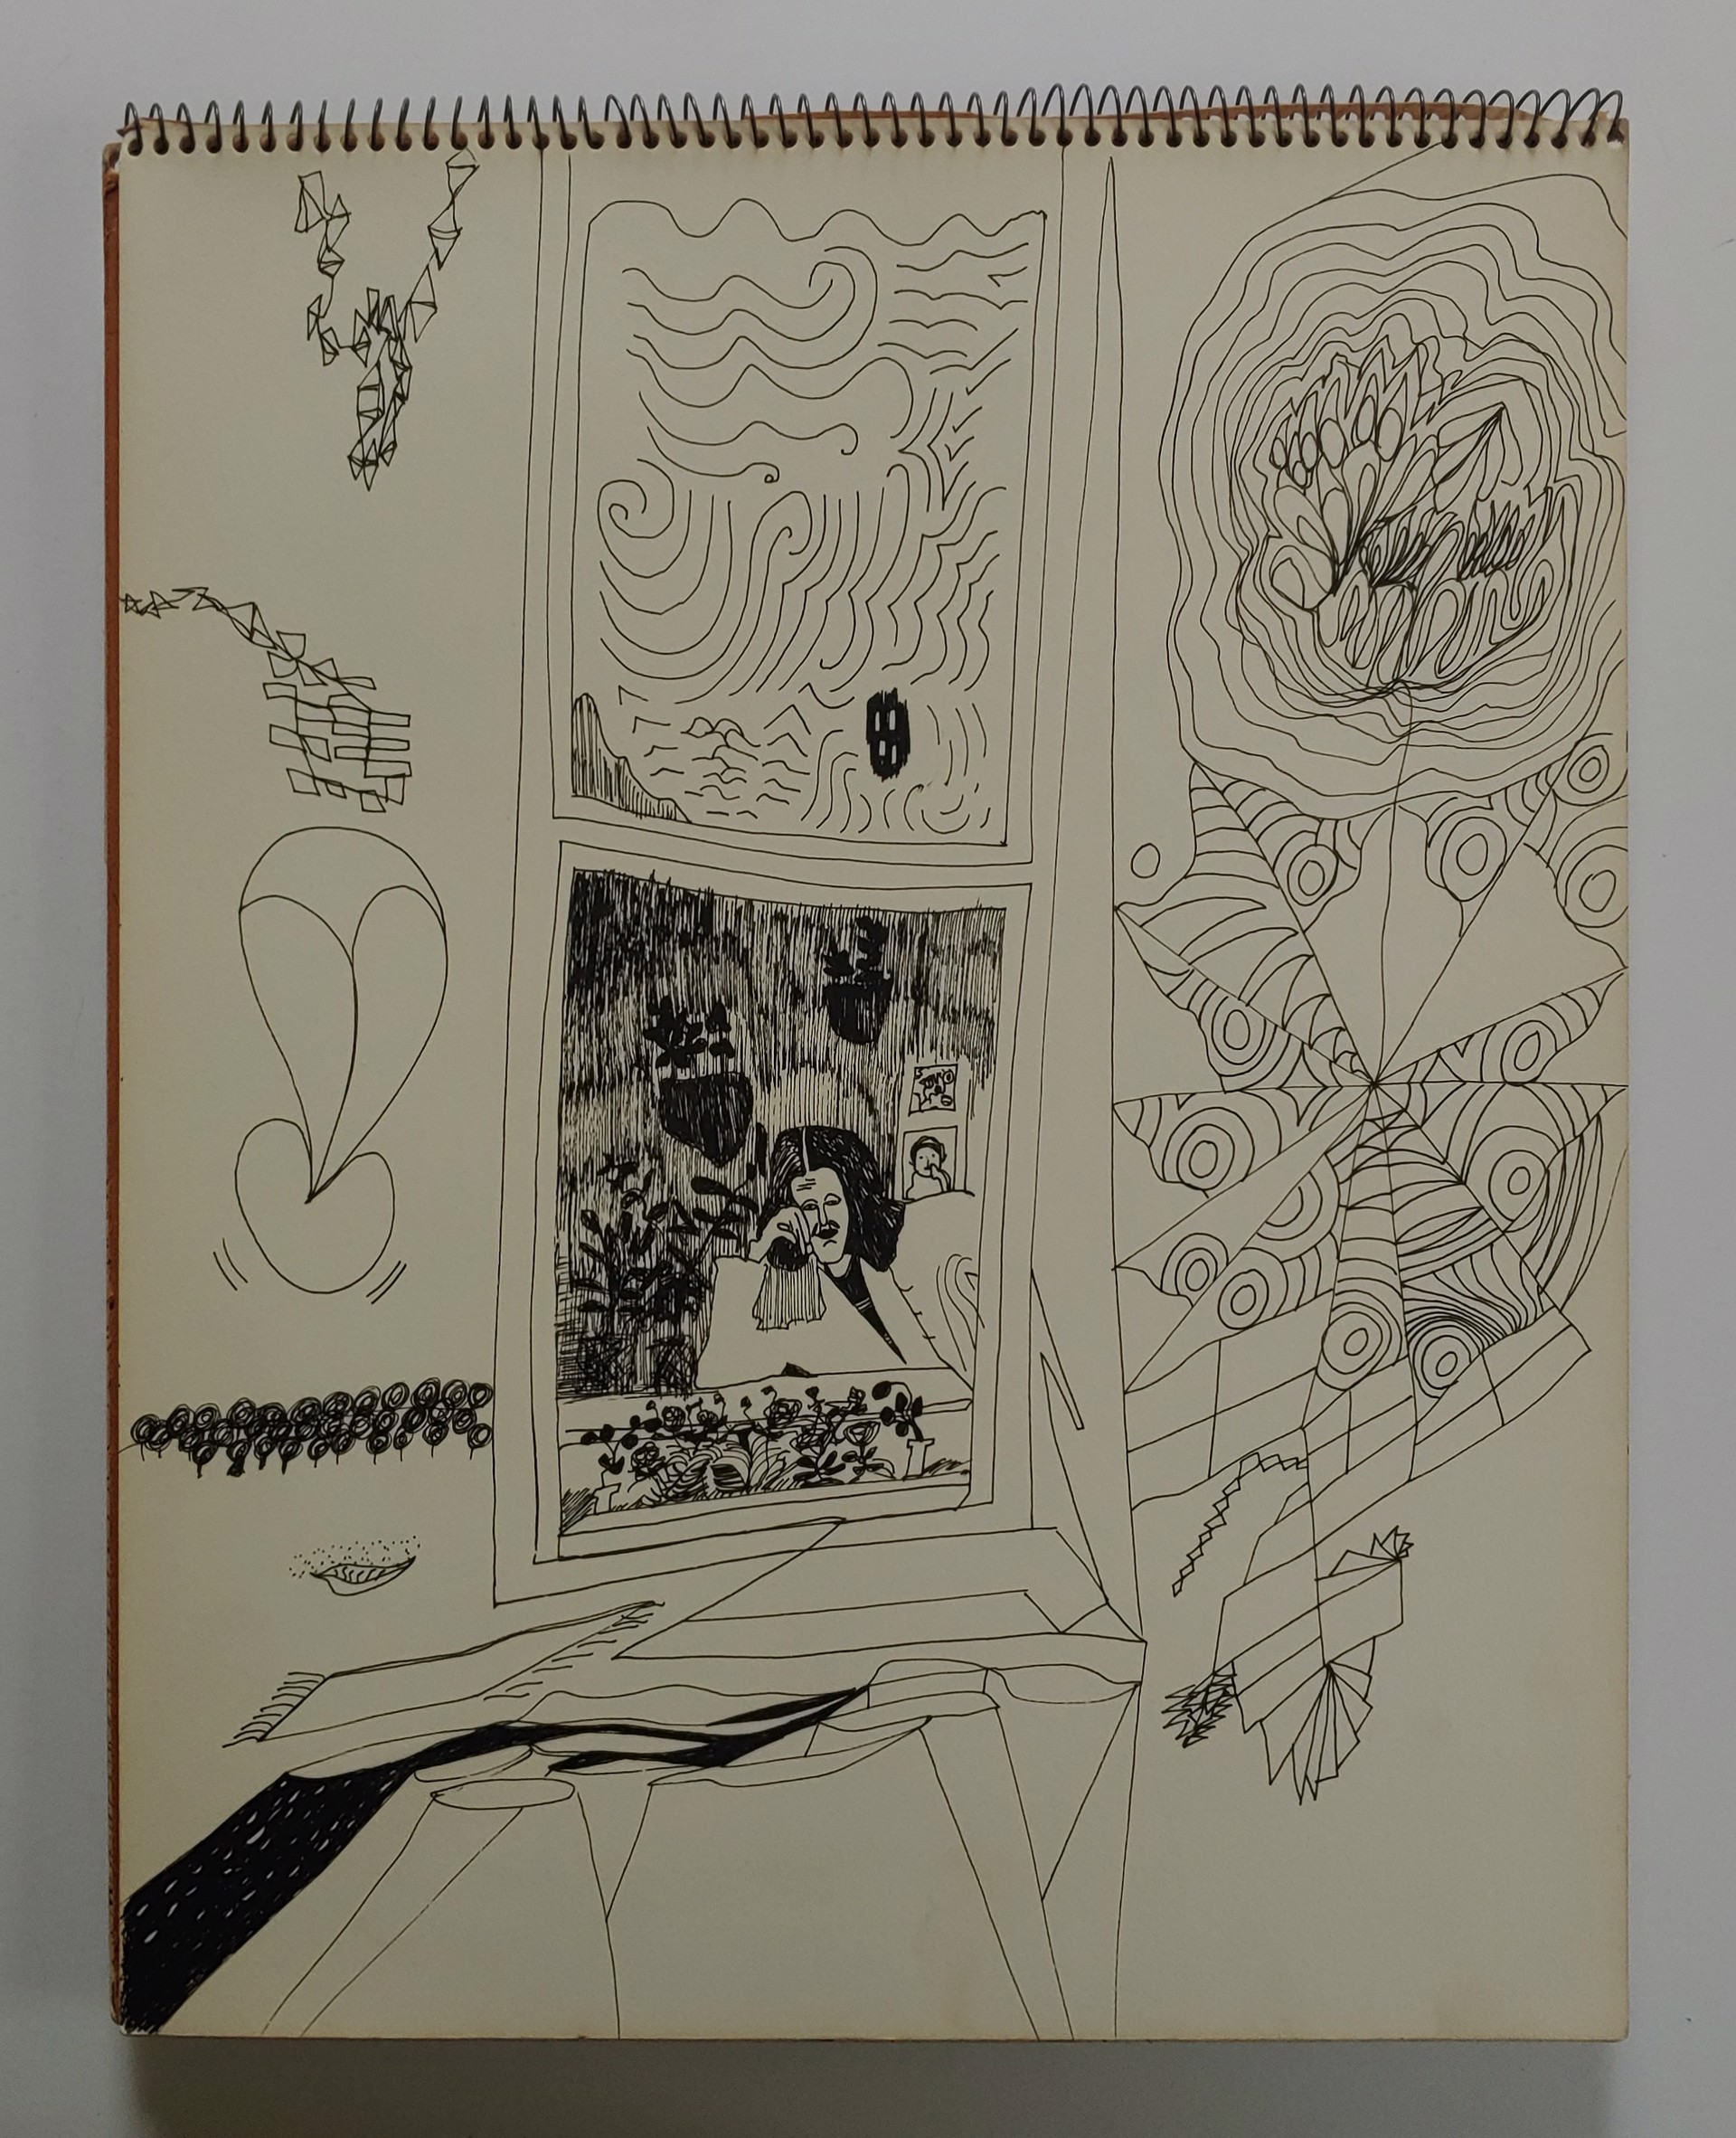 1971 Sketchbook by David Amdur